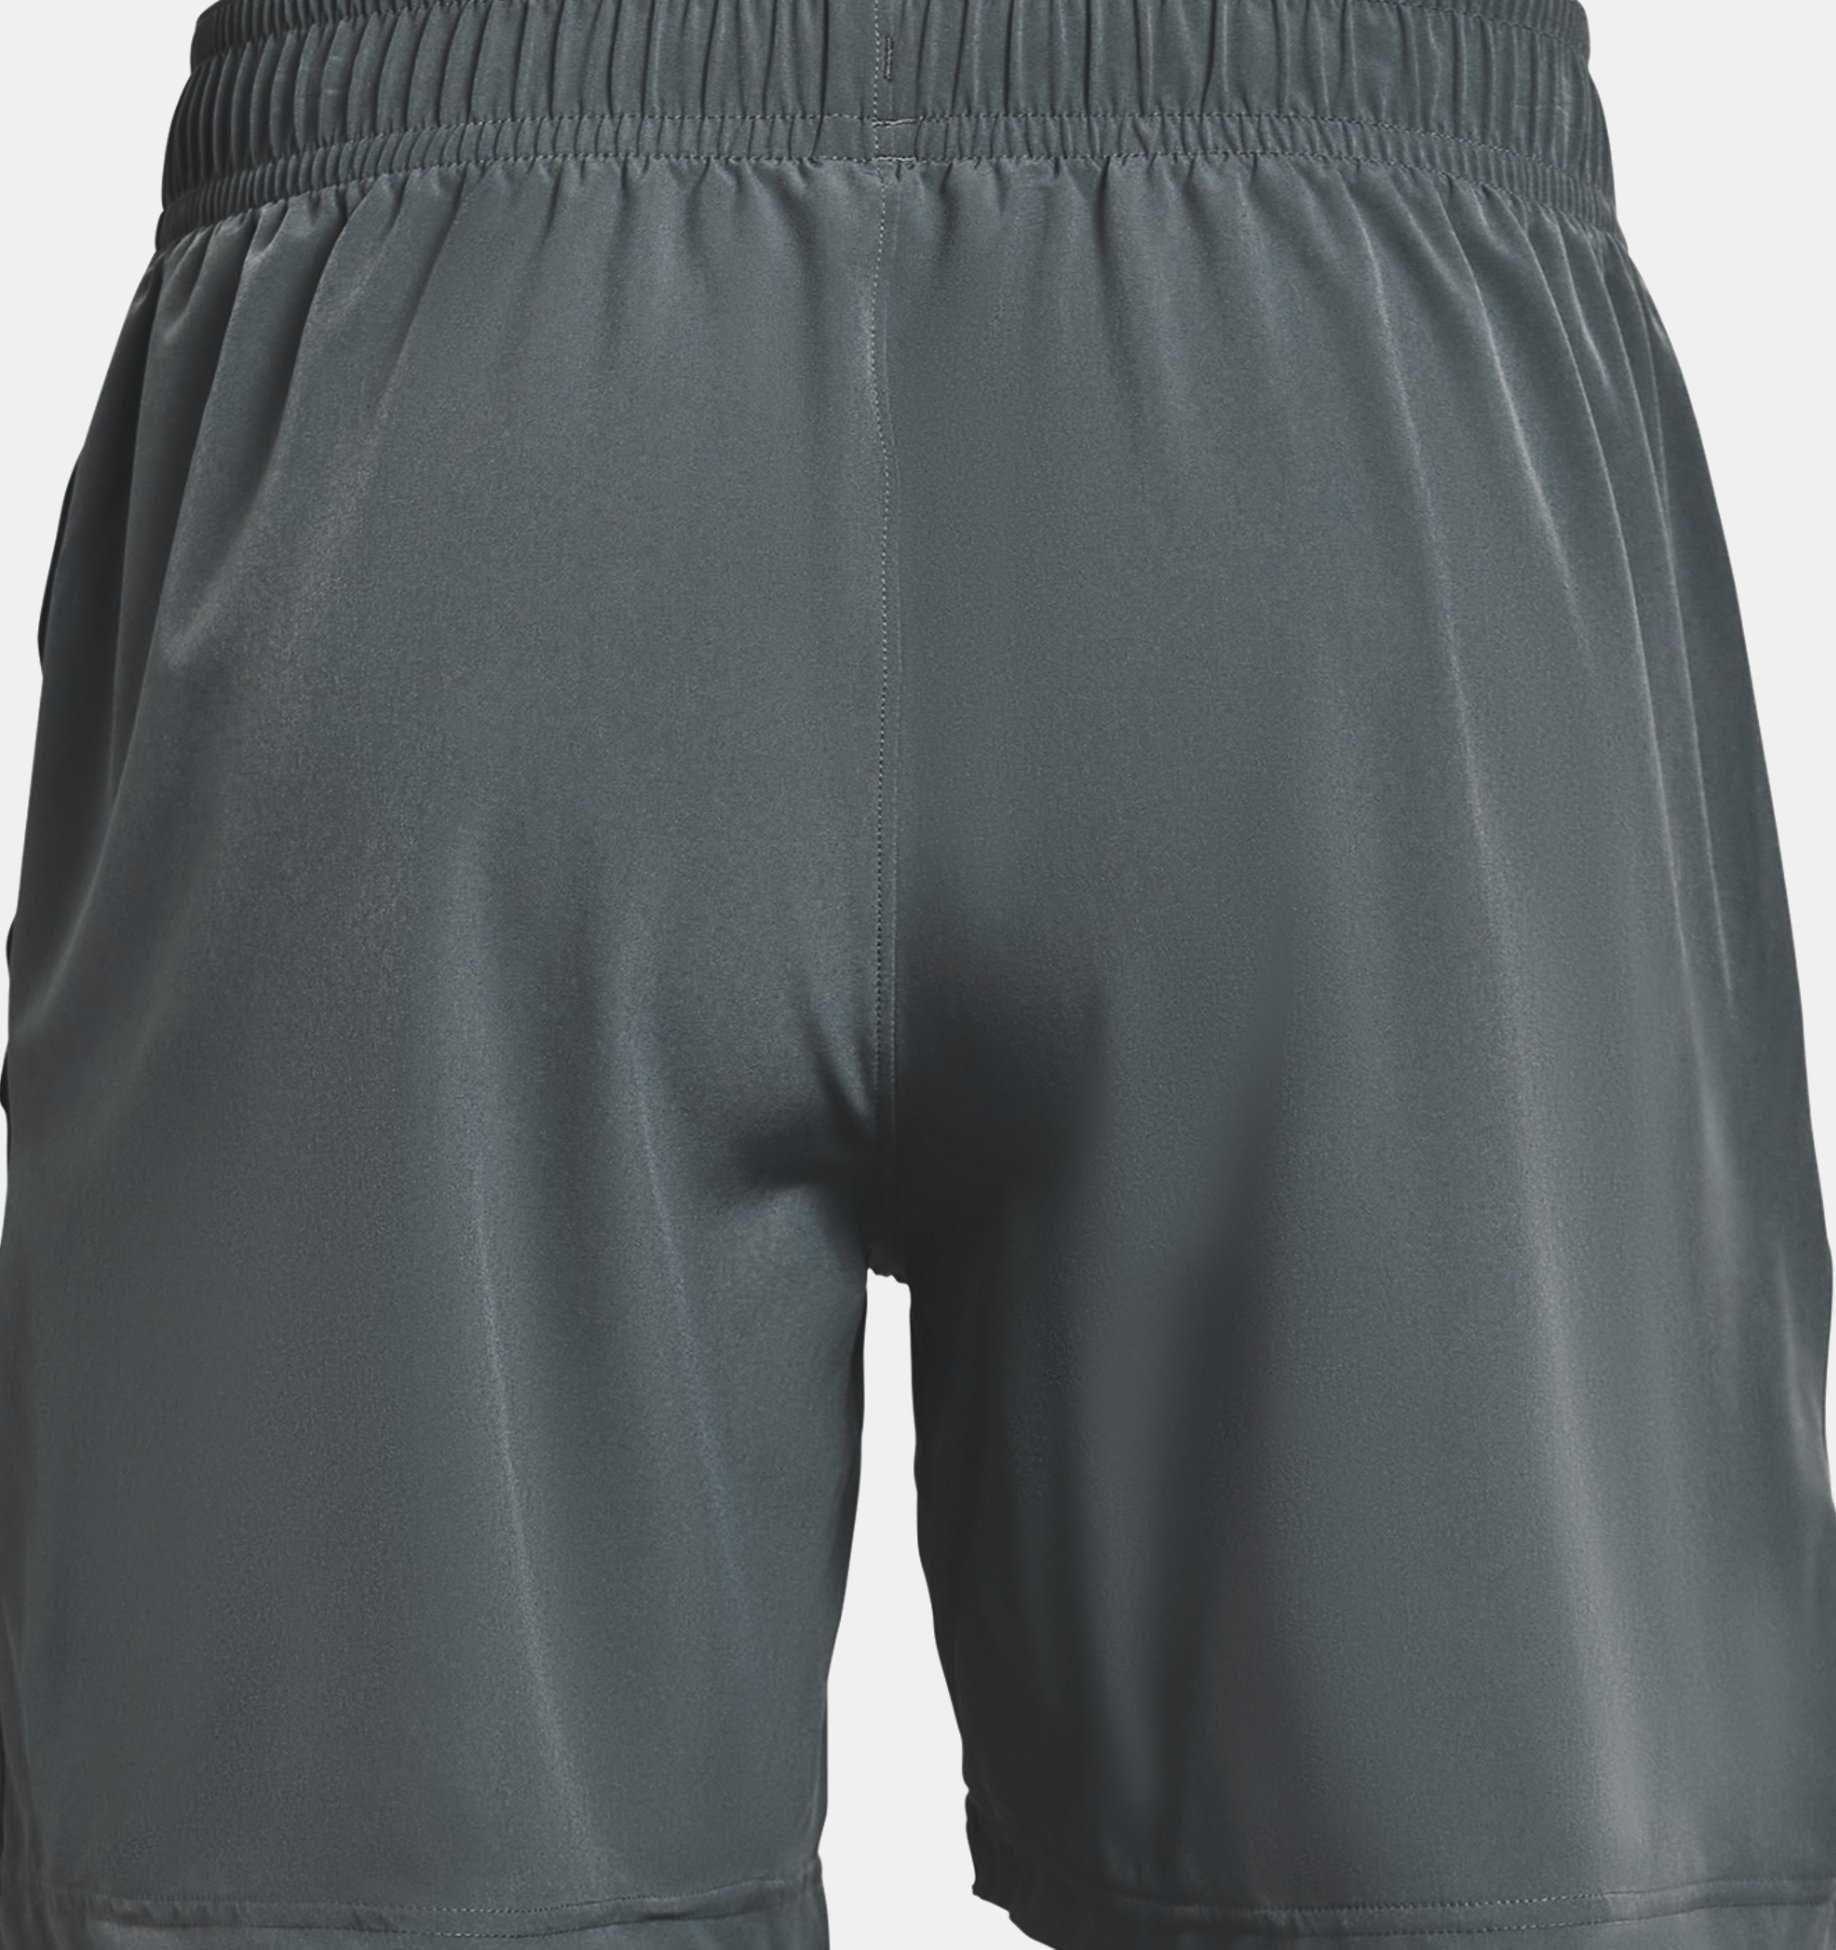 environ 17.78 cm Hommes Shorts de Course XL Neuf Avec étiquettes Bleu Ajustée HeatGear Under Armour Lancement unique Weave 7 in 